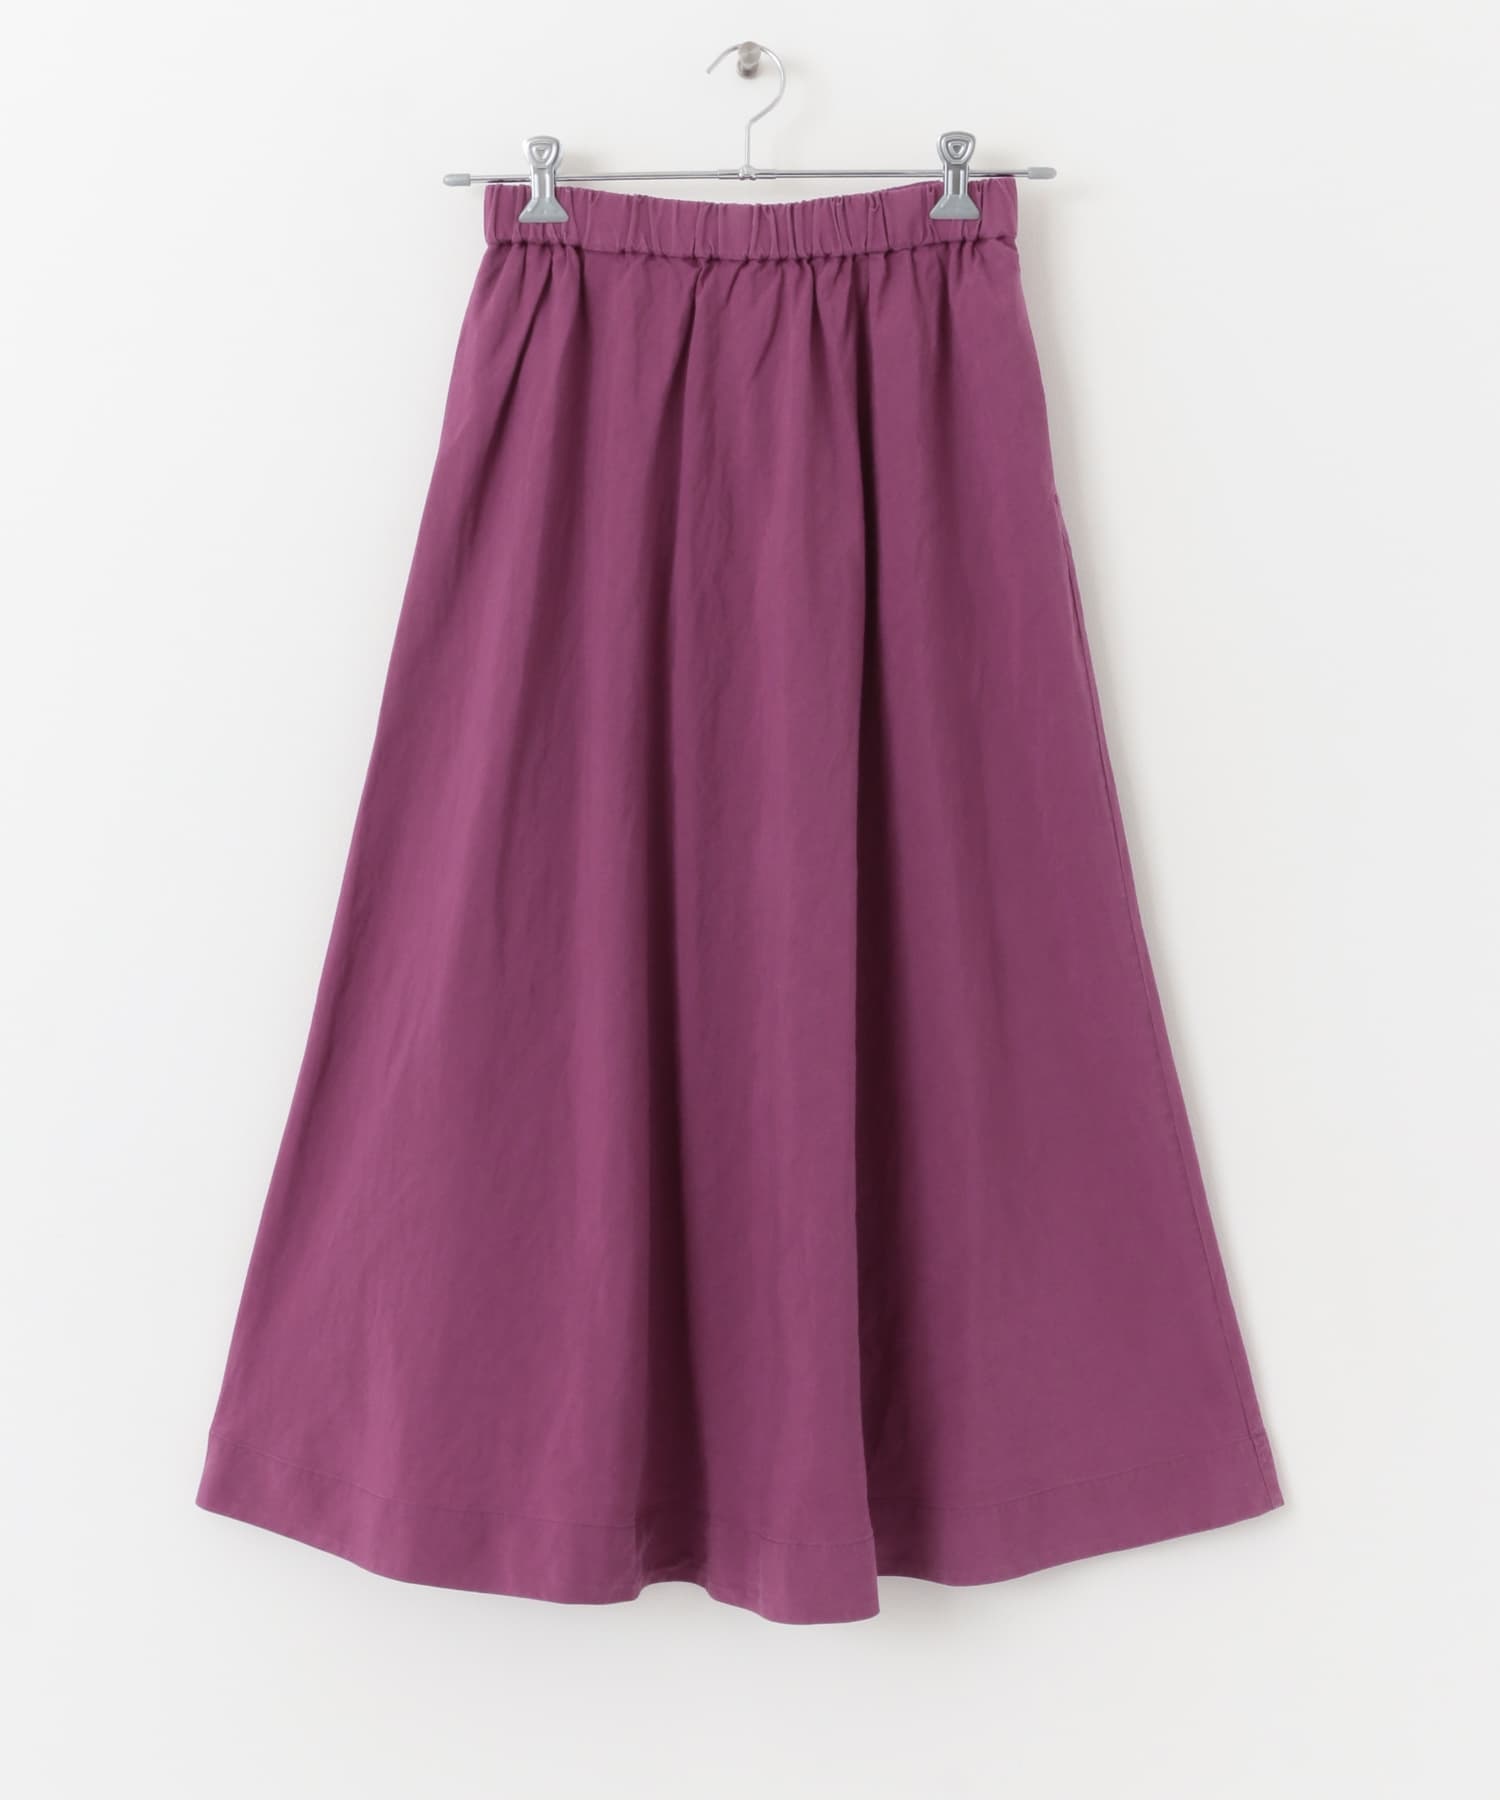 混麻料傘狀裙(紫色-M-PURPLE)